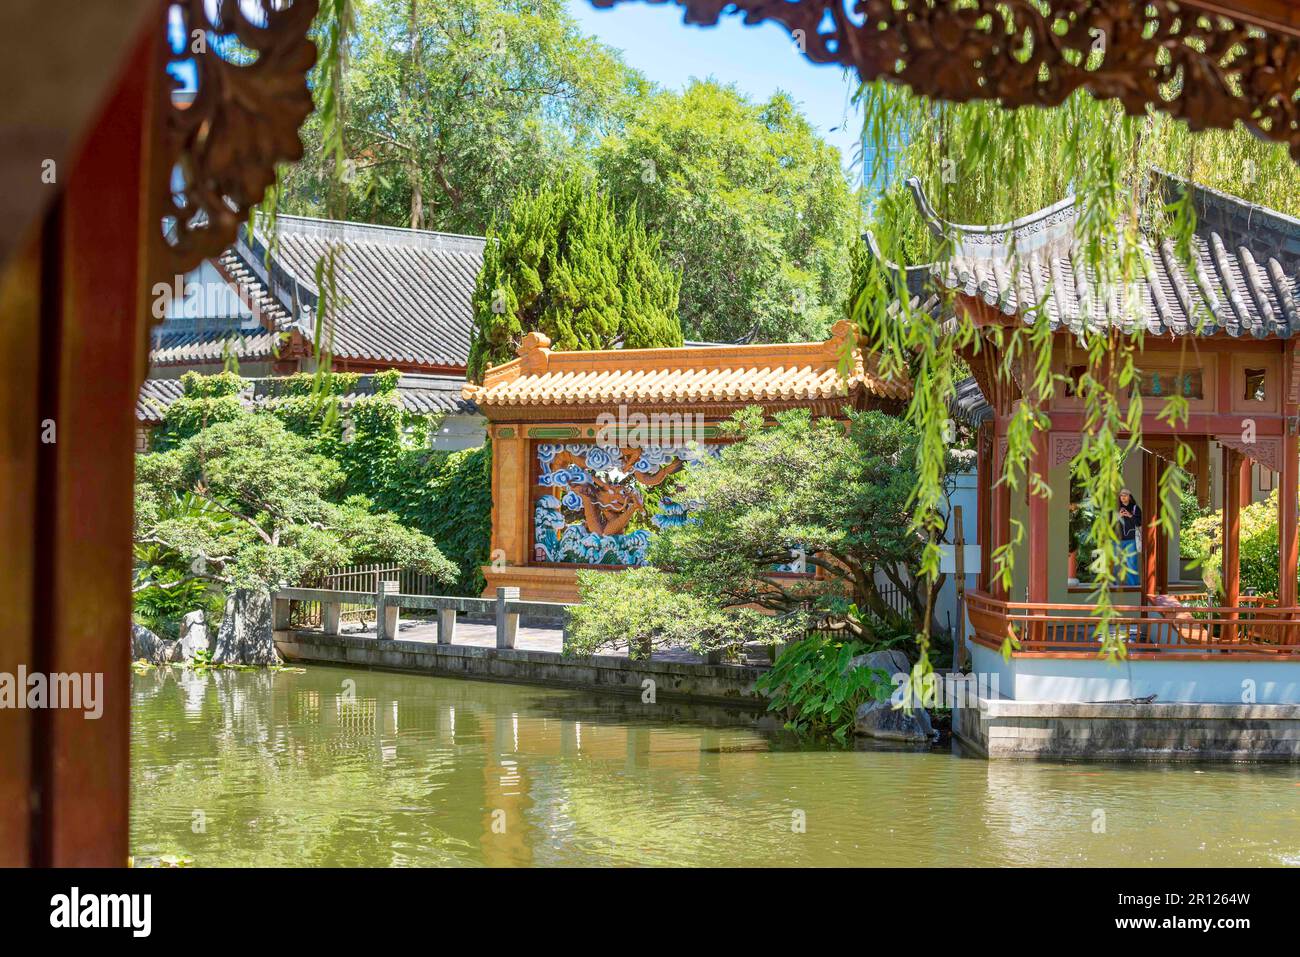 The Dragon Wall mit zwei fliegenden Drachen, ein Geschenk von Guangdong City nach New South Wales in den Chinese Gardens of Friendship in Sydney, Australien Stockfoto